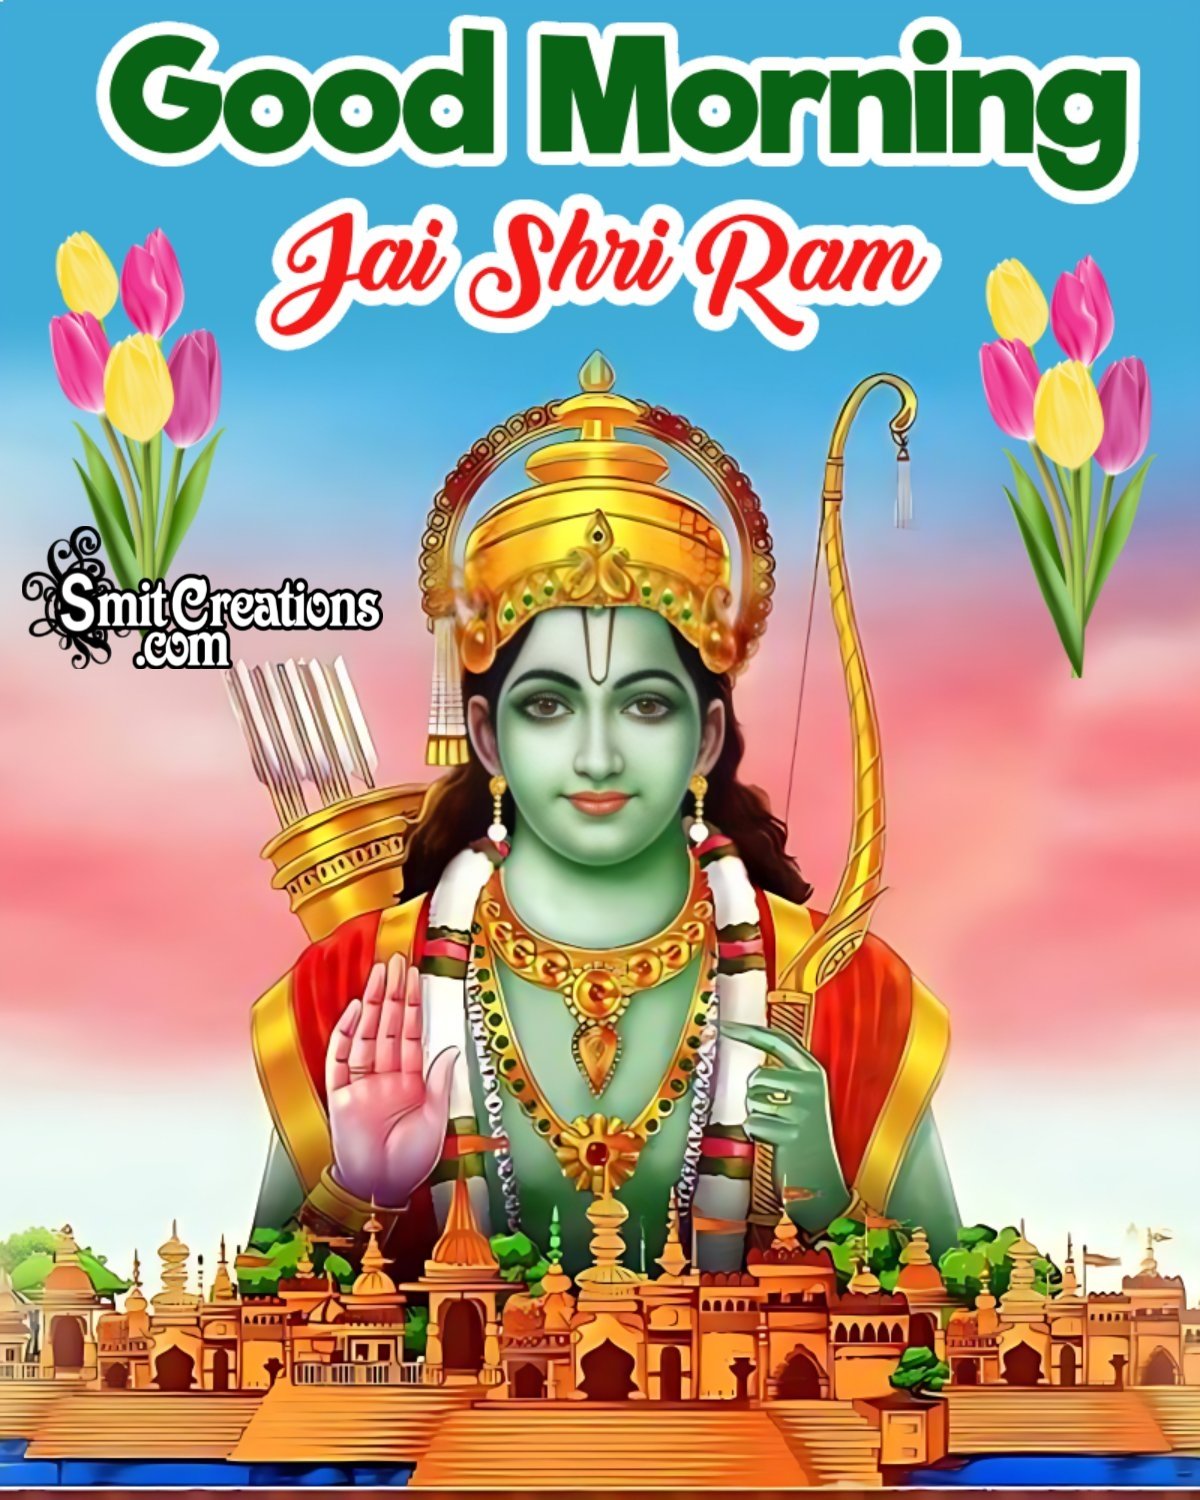 Good Morning Jai Shri Ram